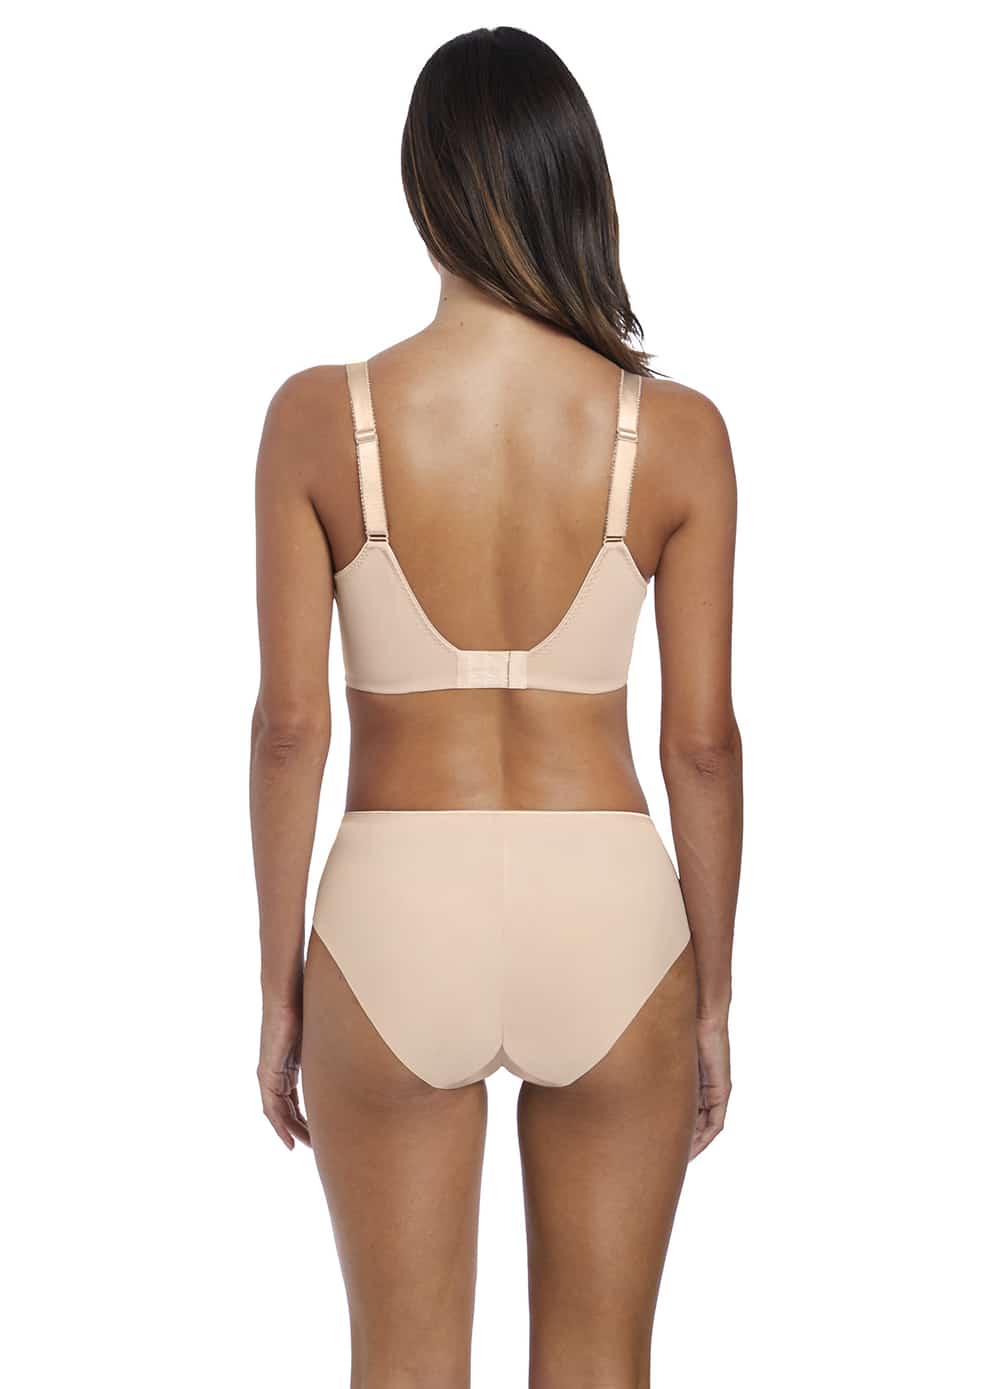 Fantasie Illusion Side Support Bra - Wired bra - Bras - Underwear -  Timarco.co.uk